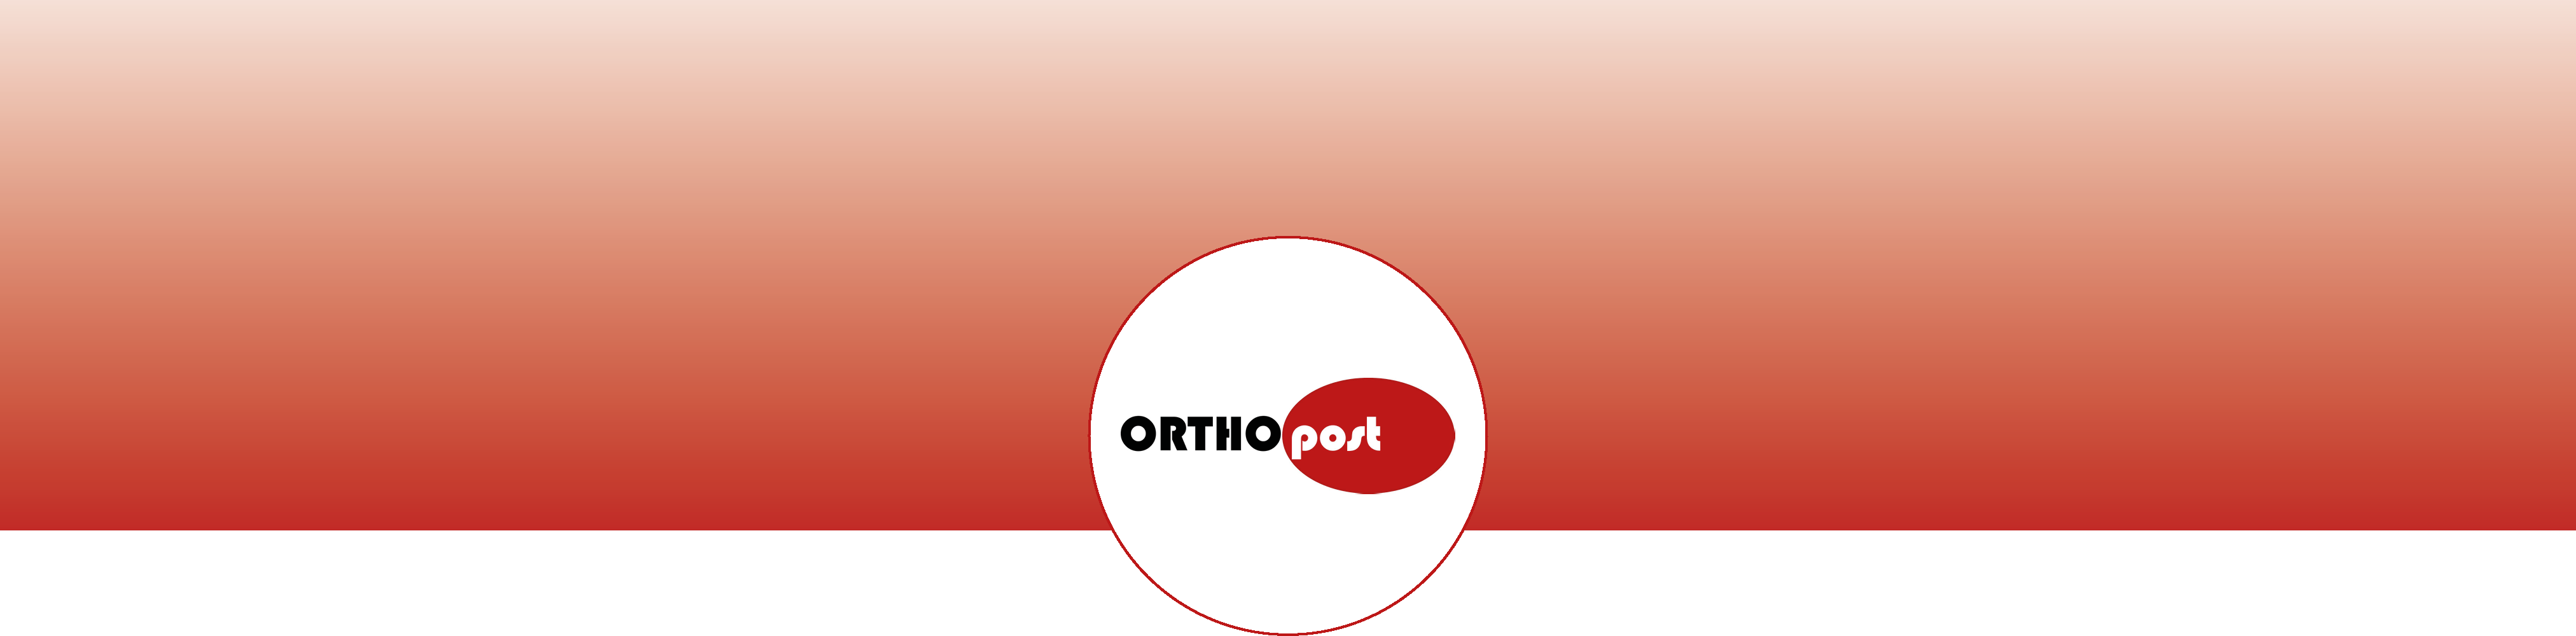 banner_orthopost